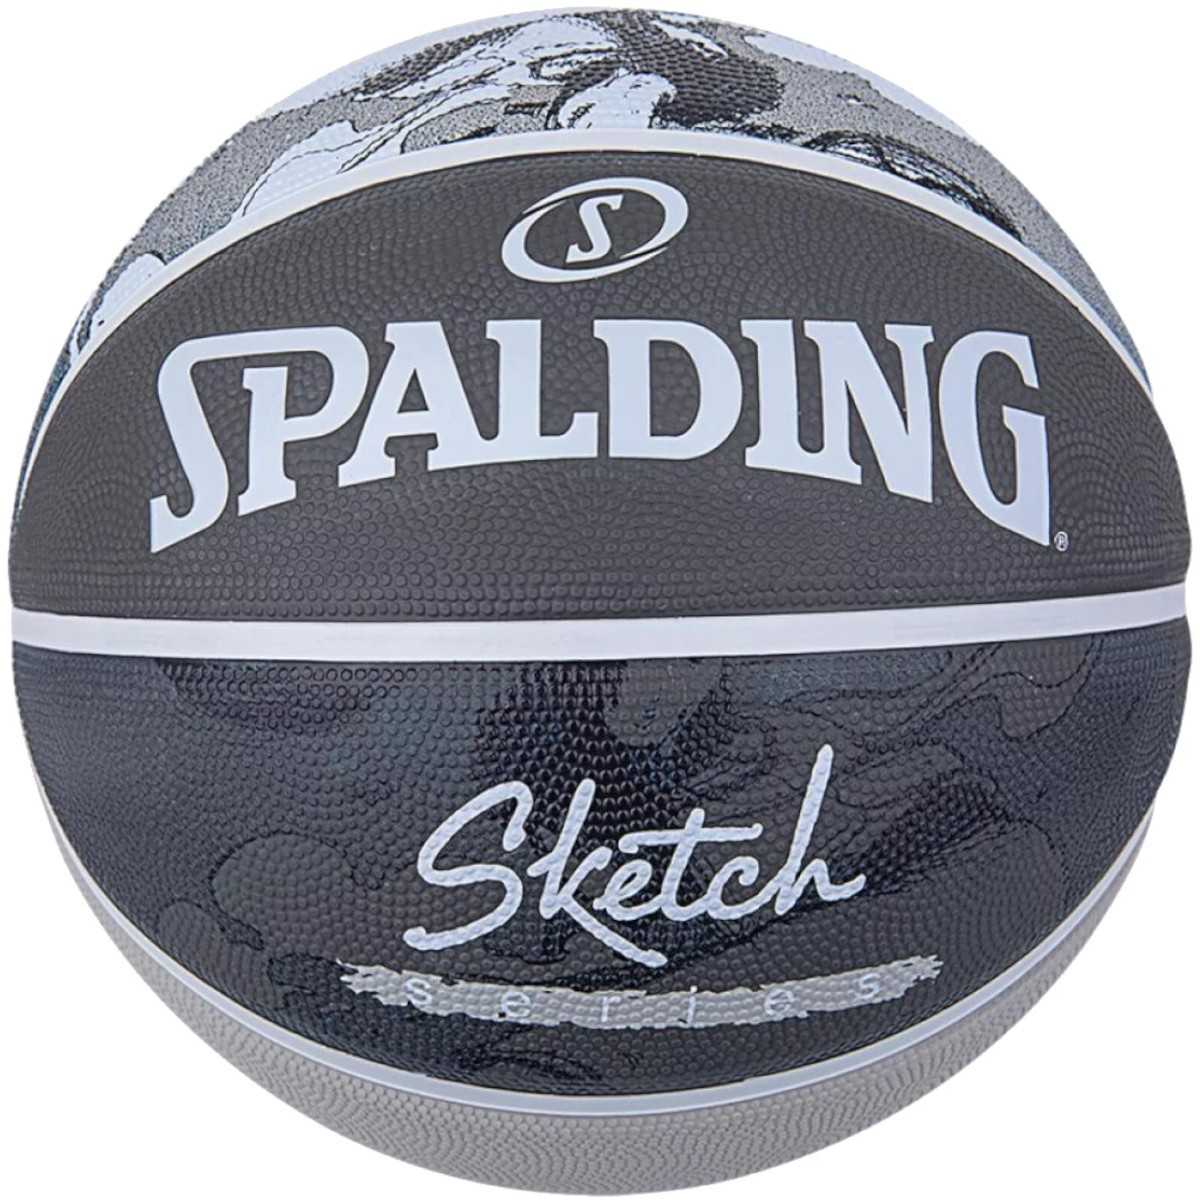 Spalding Sketch Jump krepšinio kamuolys, 7 